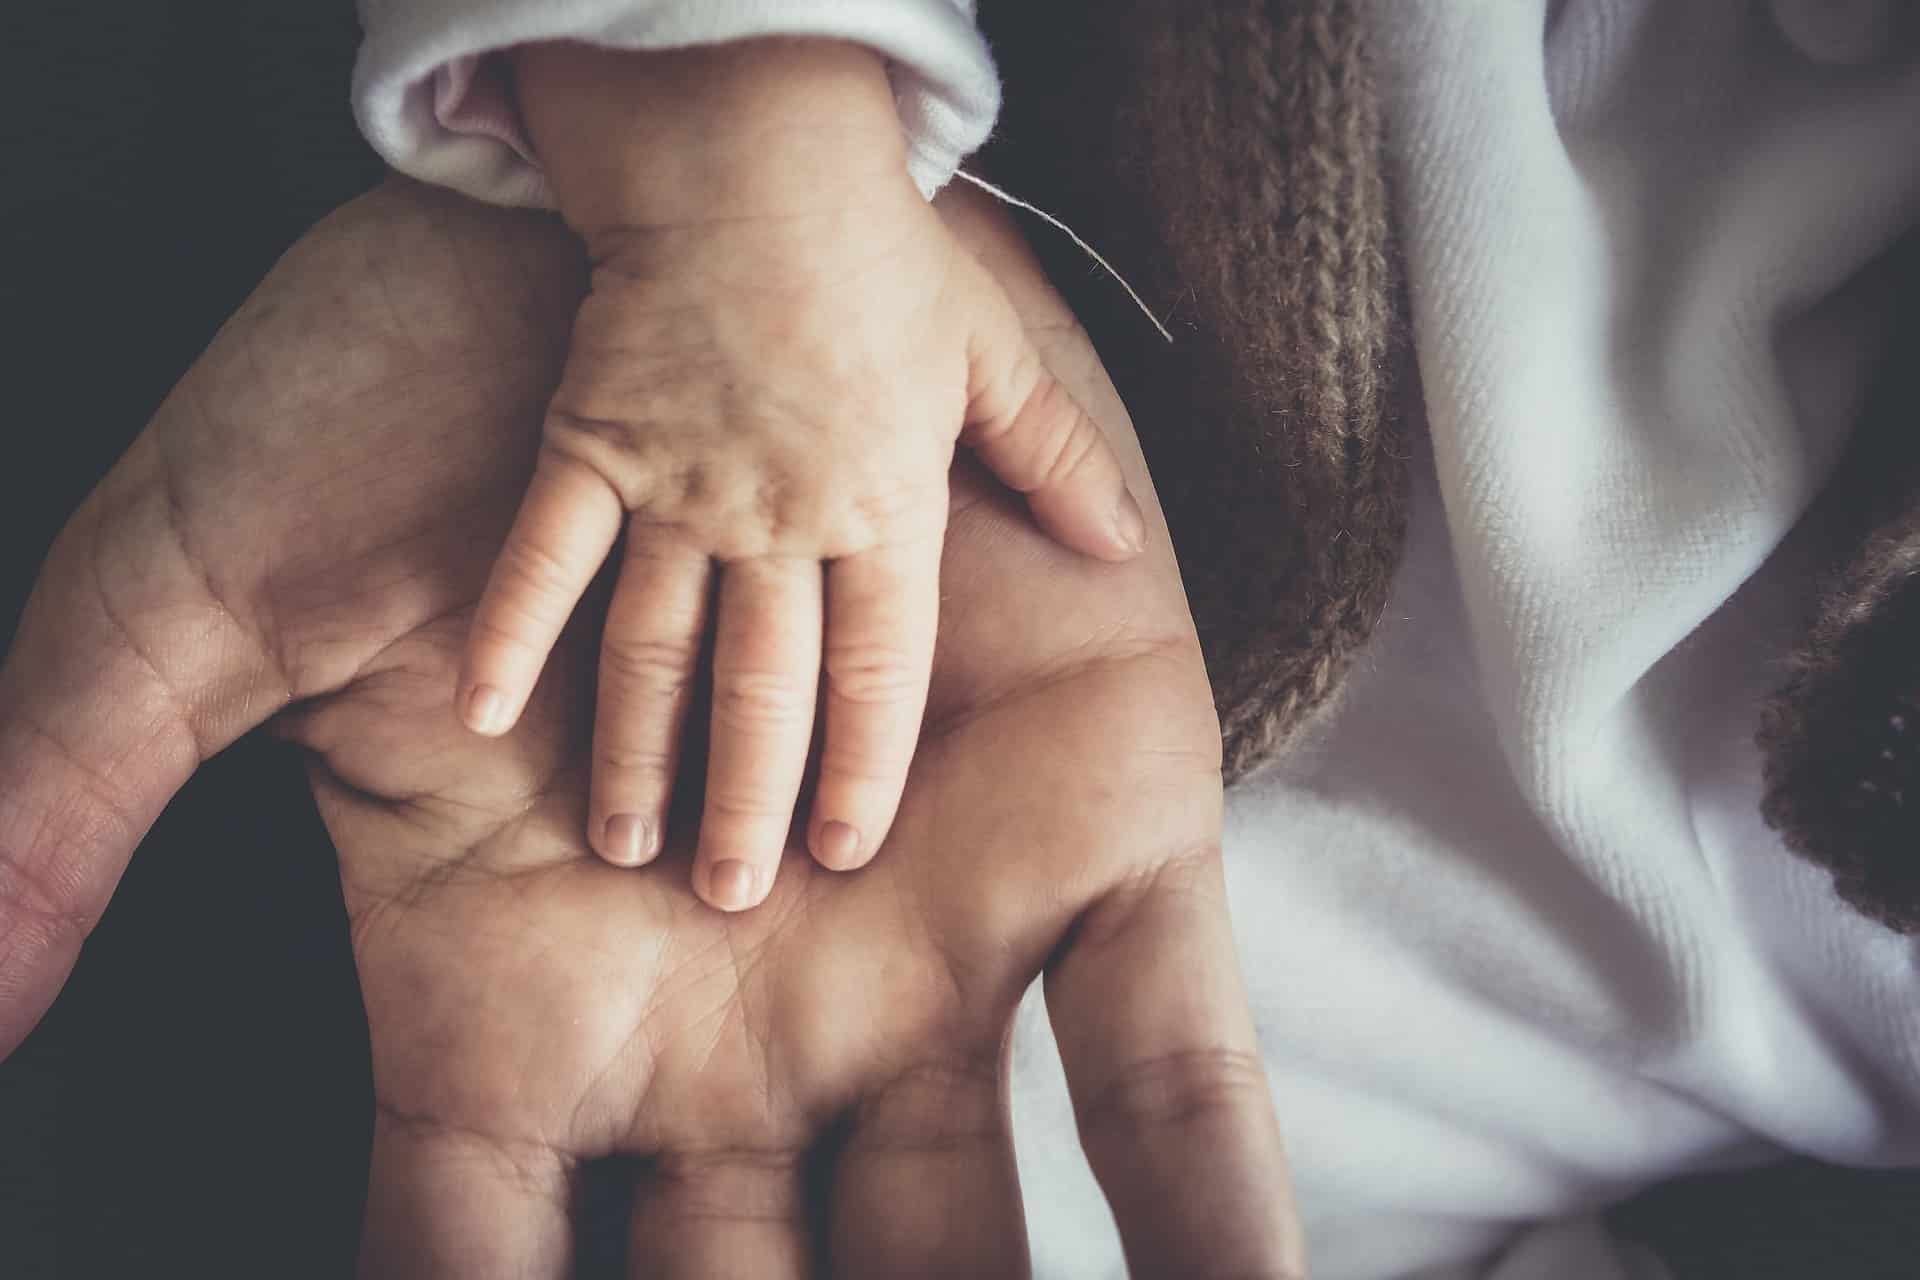 “Vätern Bleibt Keine Zeit Zum Trauern”; Artikel Im Tages-Anzeiger Zum Thema Vaterschaftsurlaub Nach Frühem Kindsverlust